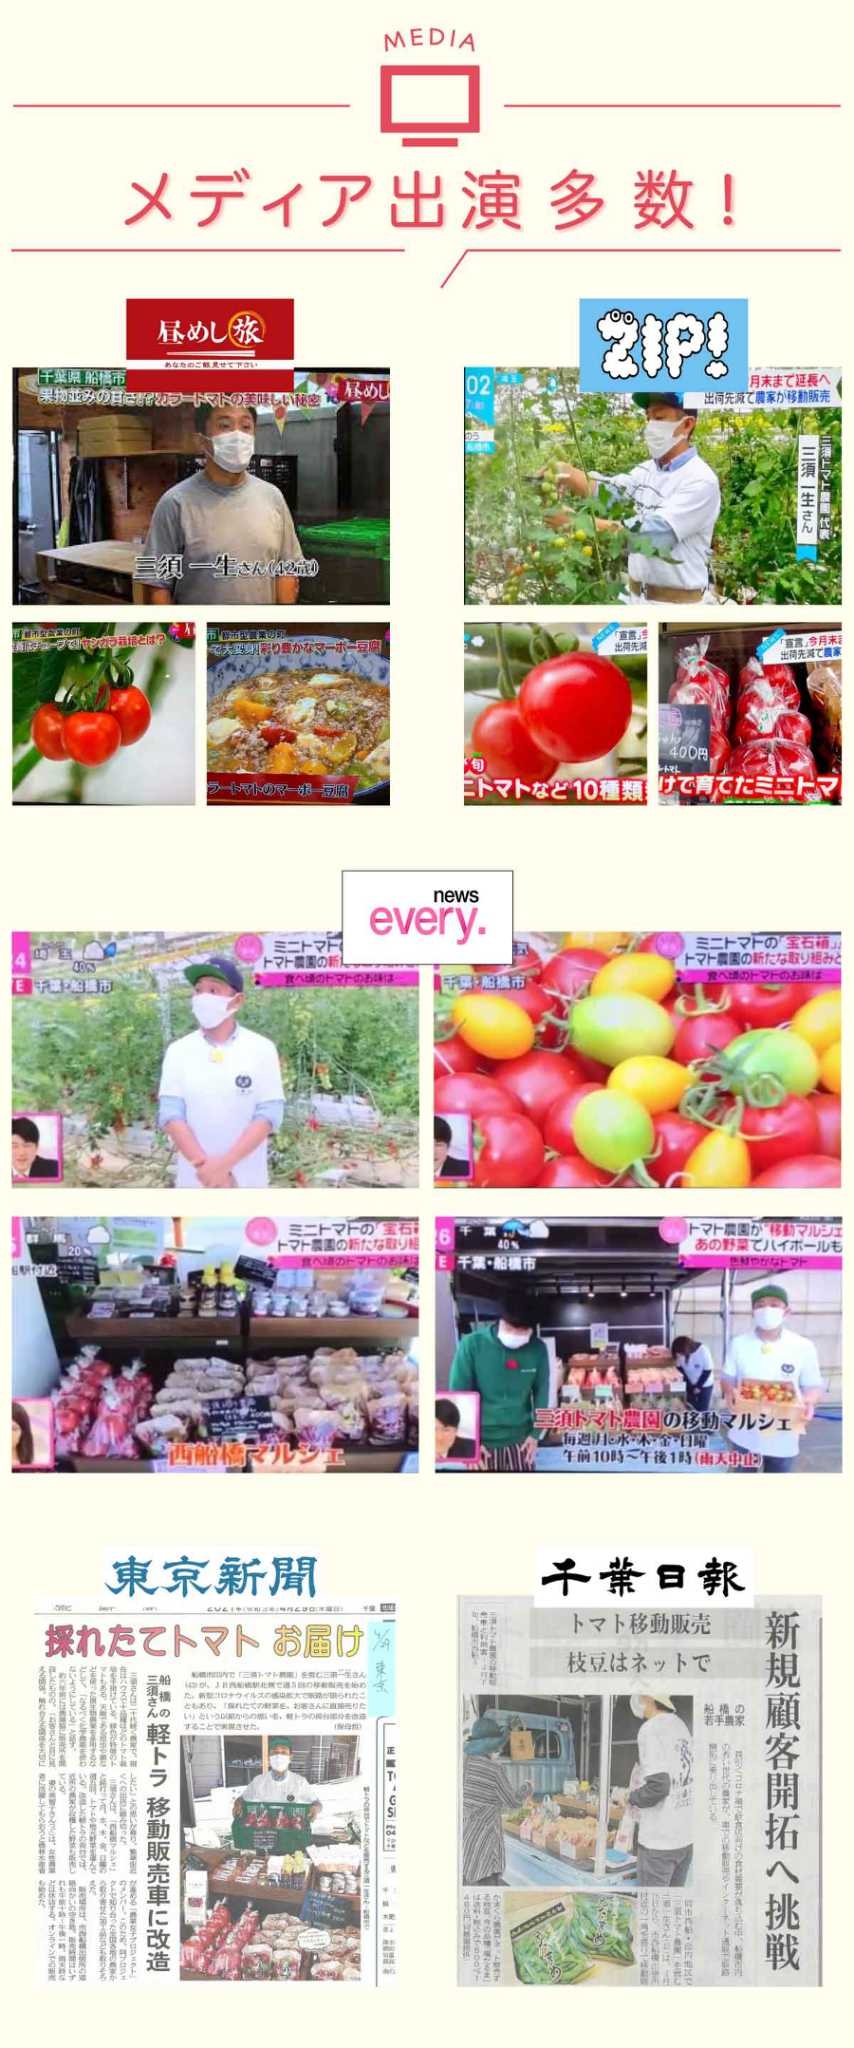 三須トマト農園のメディア出演